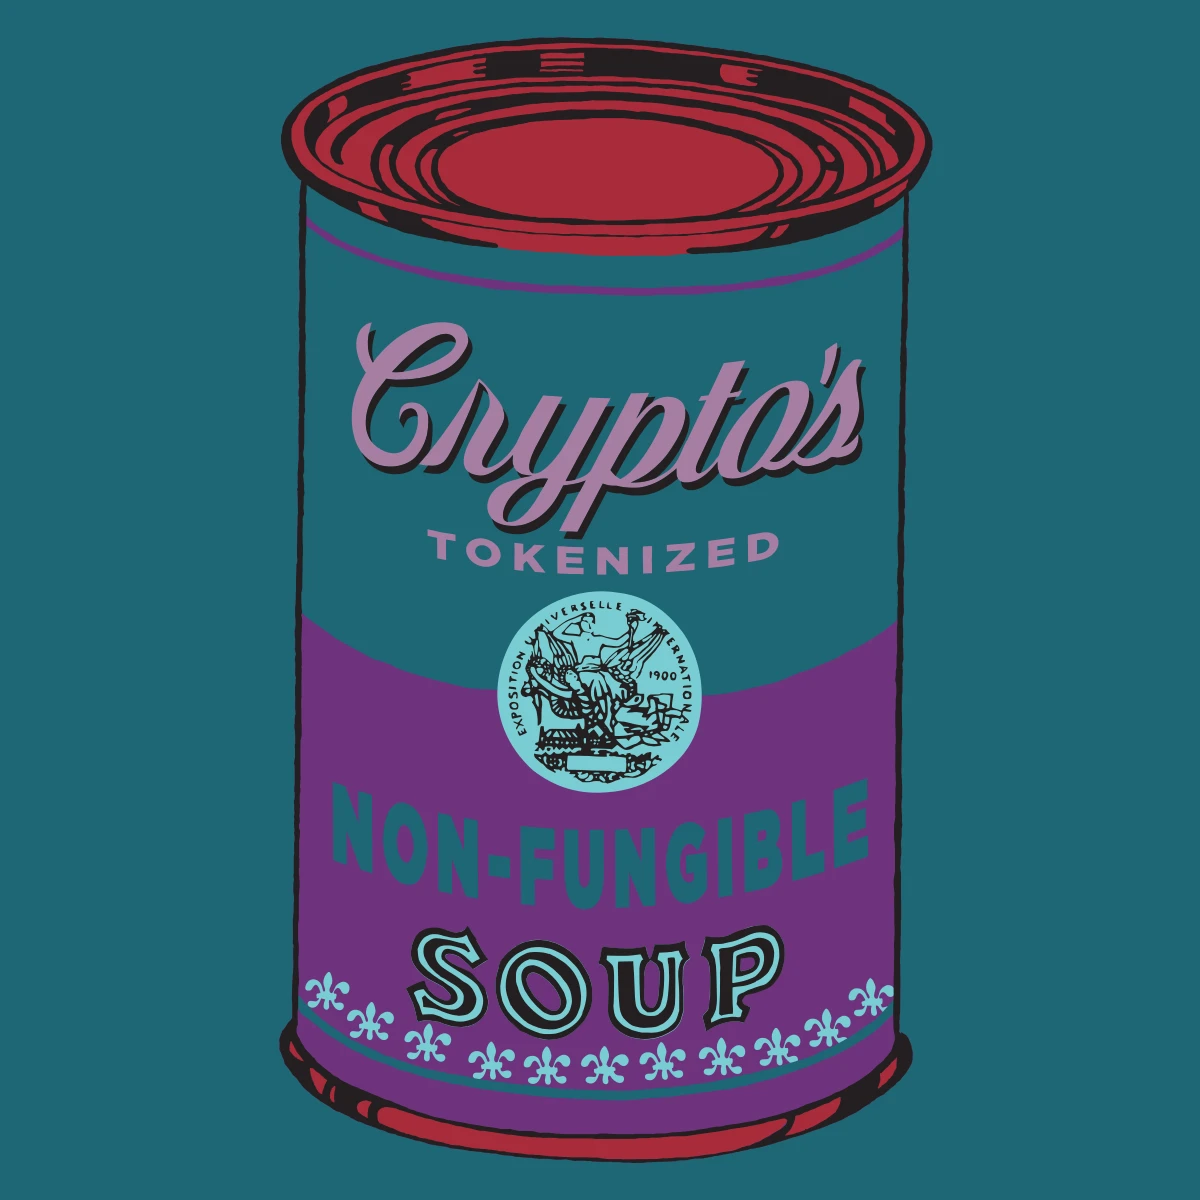 Non-Fungible Soup #0038